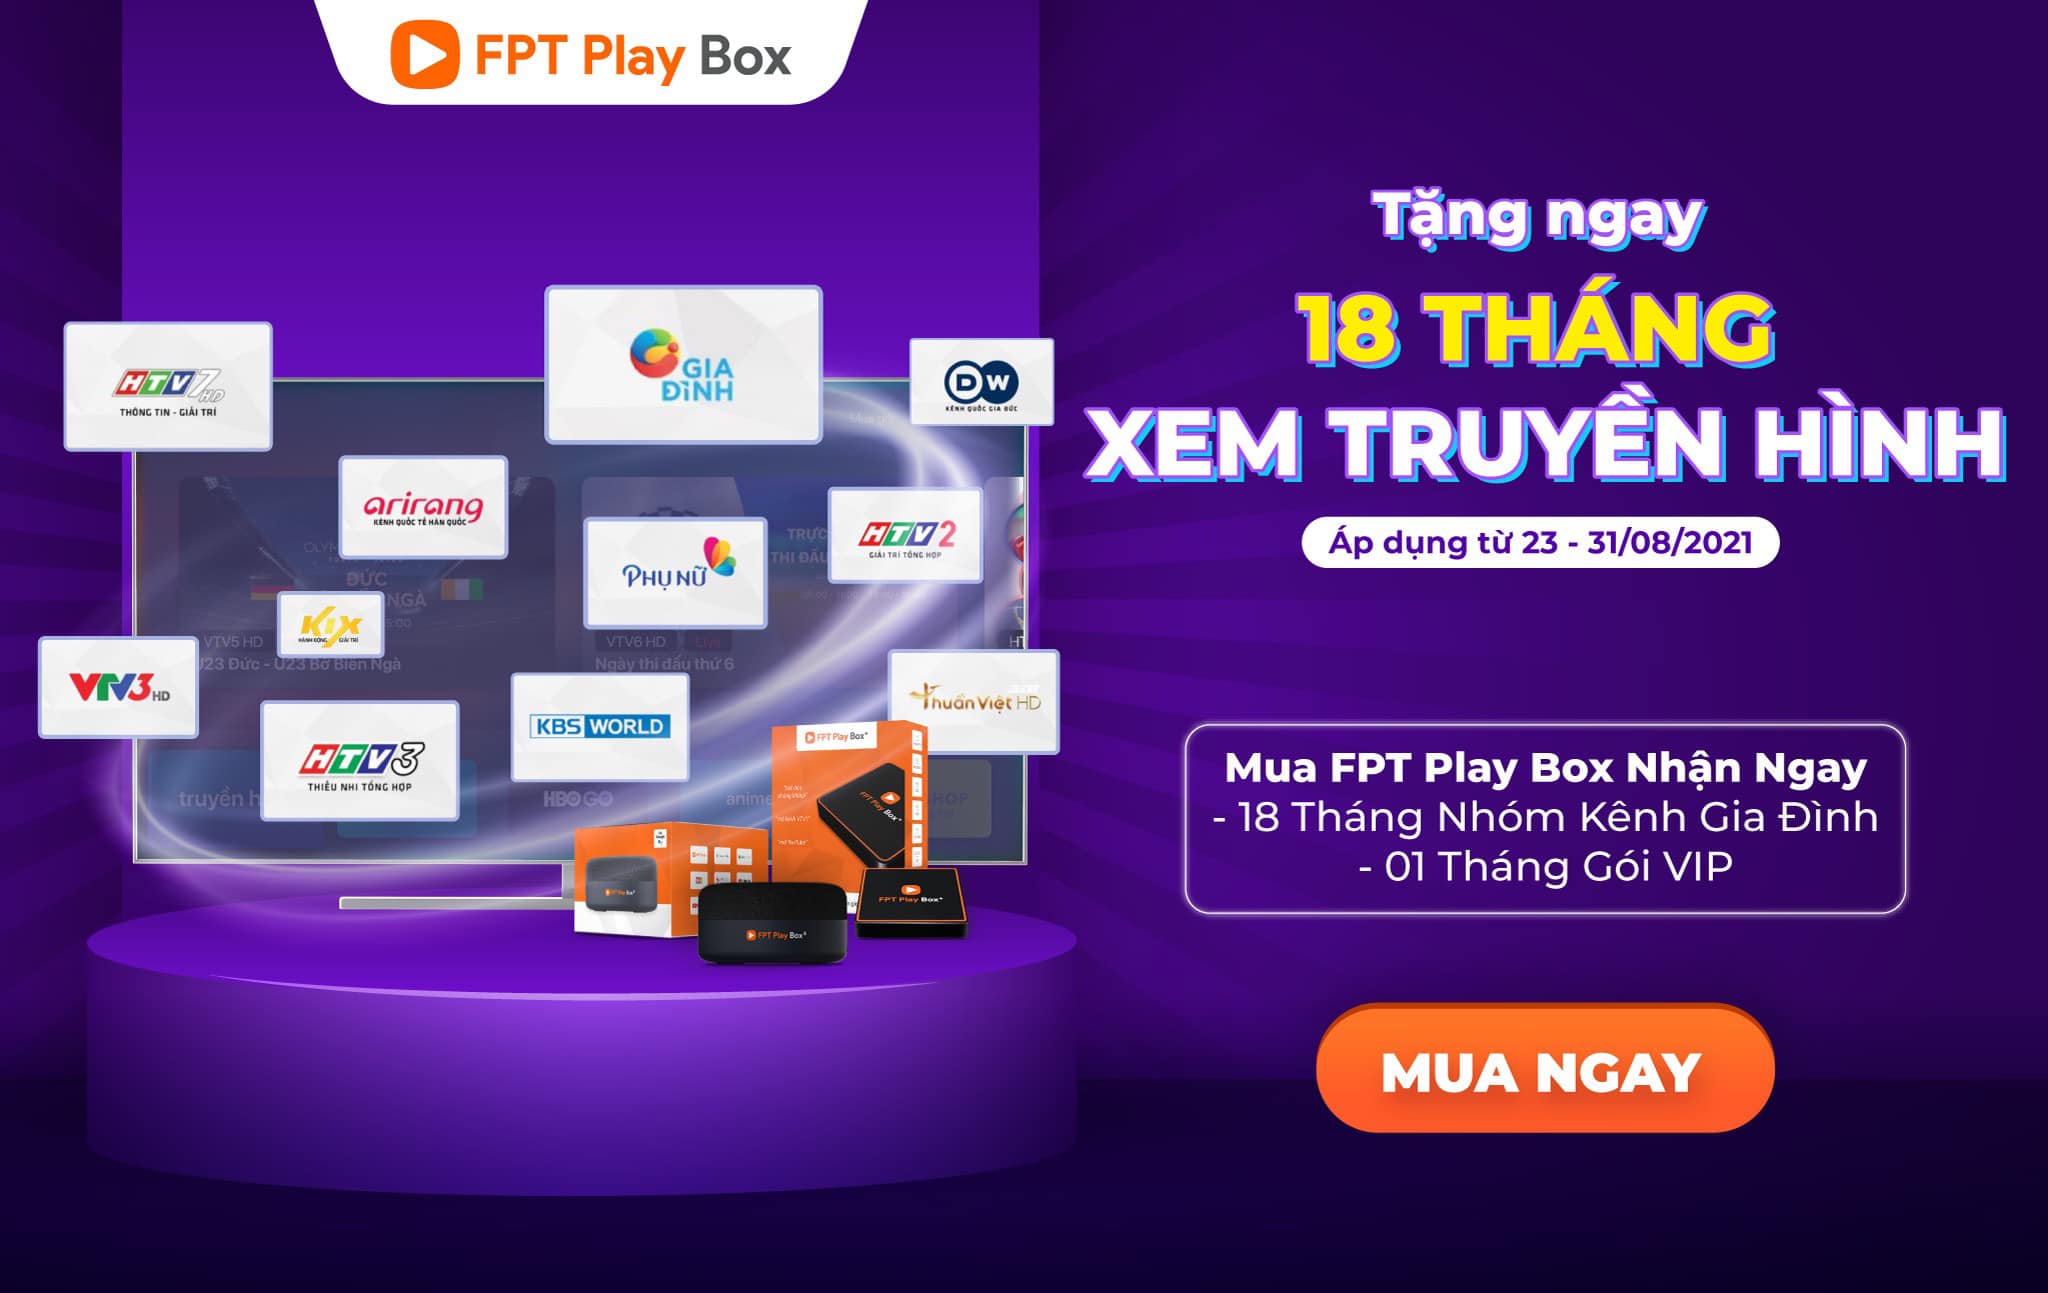 Nếu bạn muốn tặng bố mẹ 1 món quà nhỏ, thì đừng bỏ qua FPT Play Box!